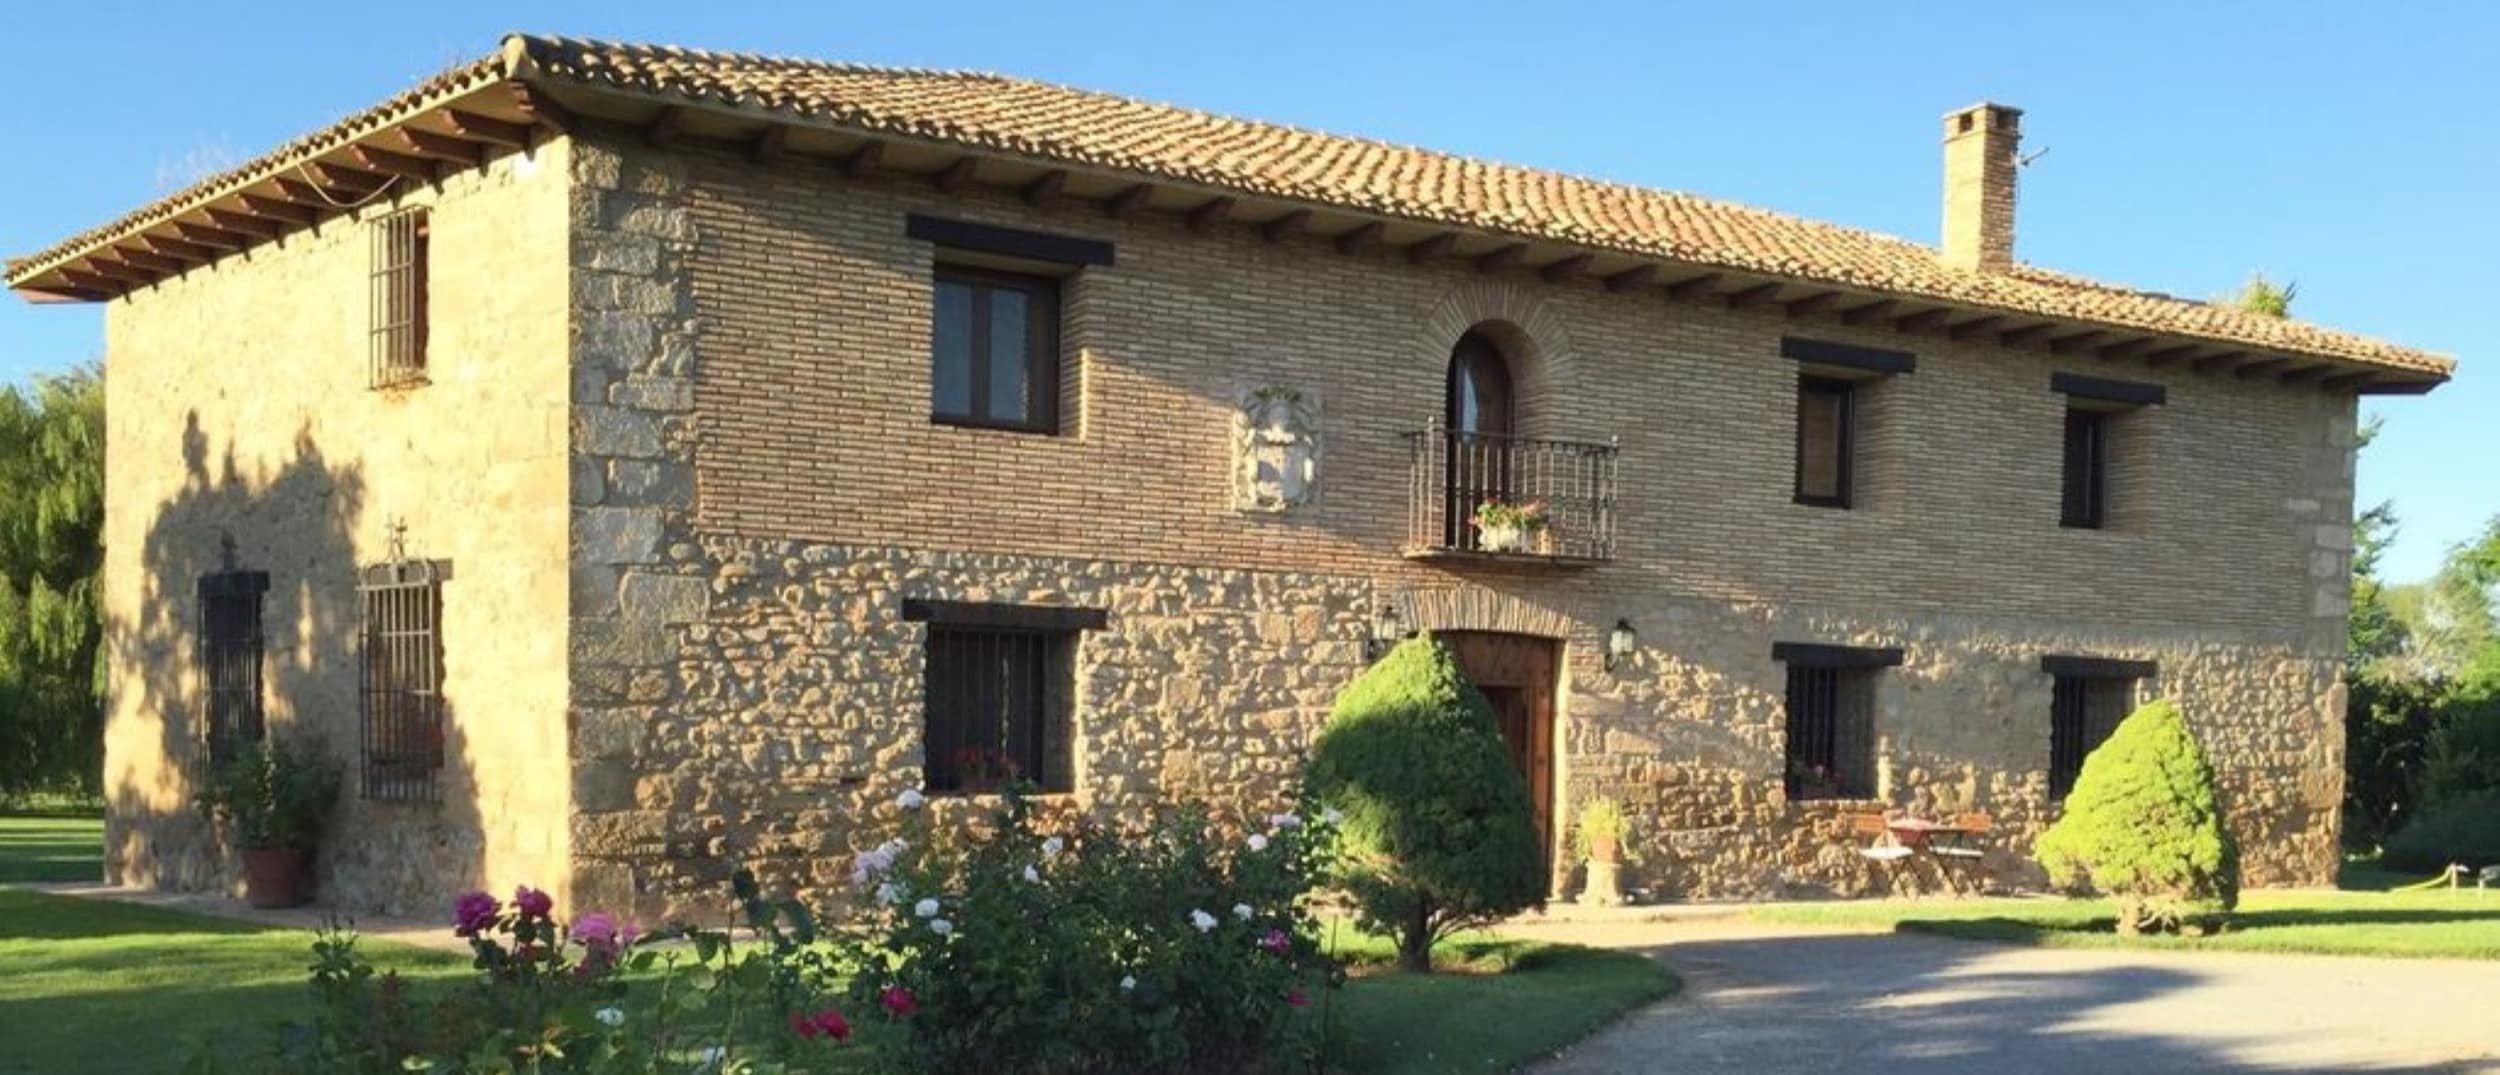 Historia, vinos y naturaleza a las puertas de tu casa rural en Logroño